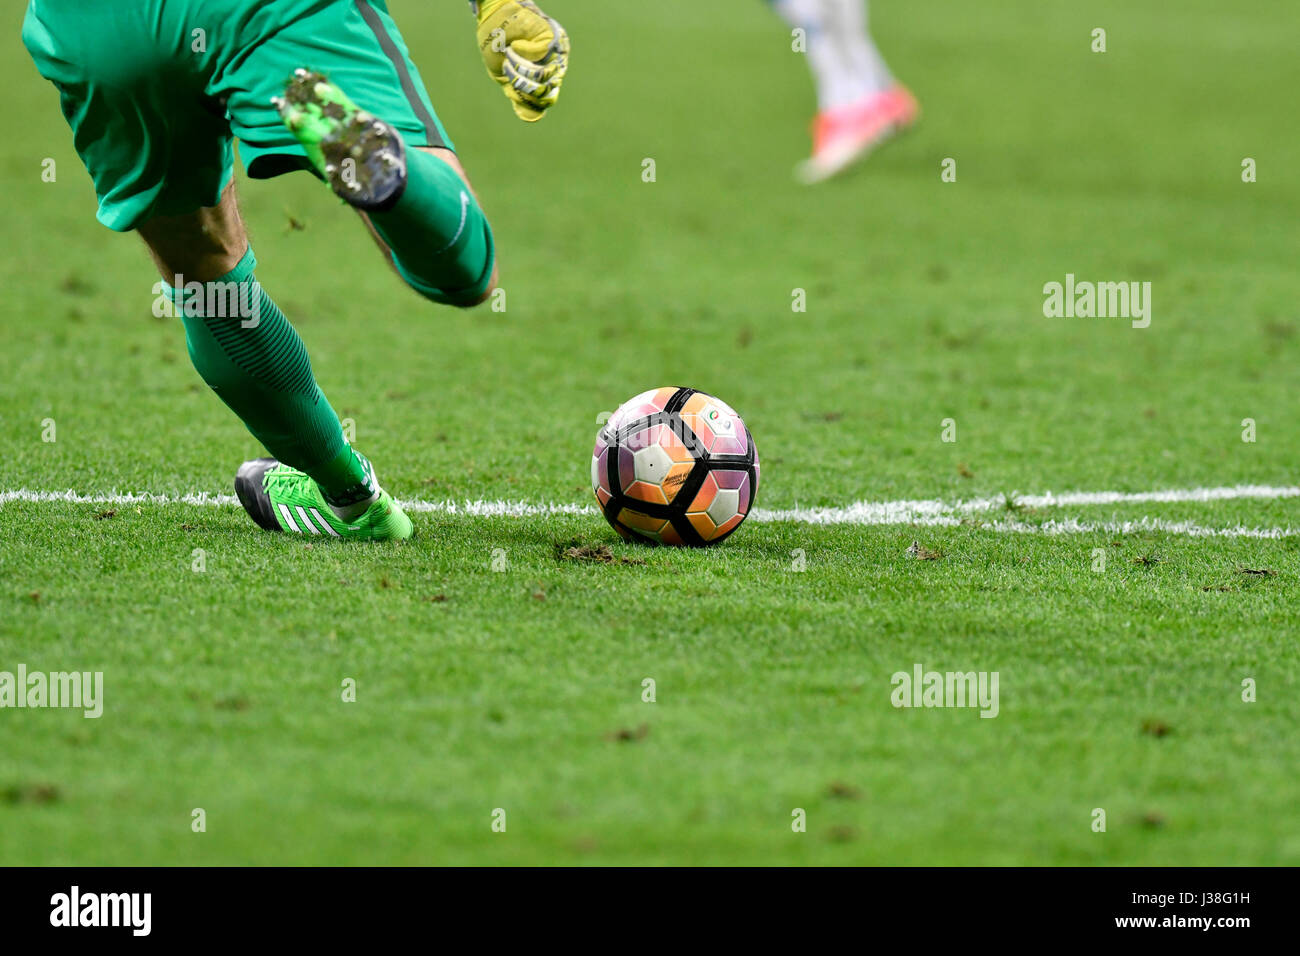 Scarpini Da Calcio Immagini e Fotos Stock - Alamy